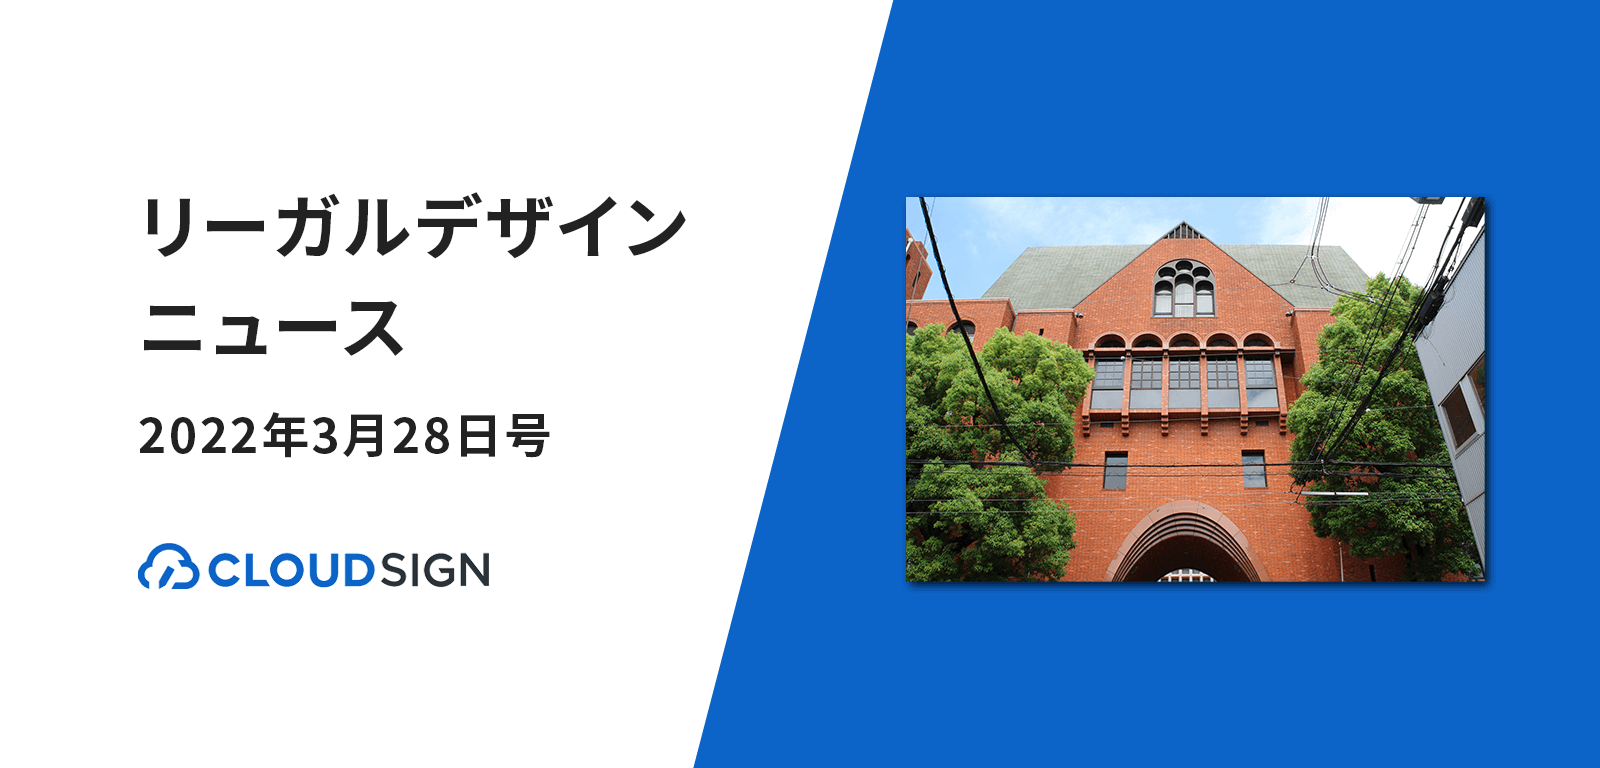 リーガルデザインニュース 2022年3月28日号 —近畿大学がSMBCクラウドサインを導入ほか